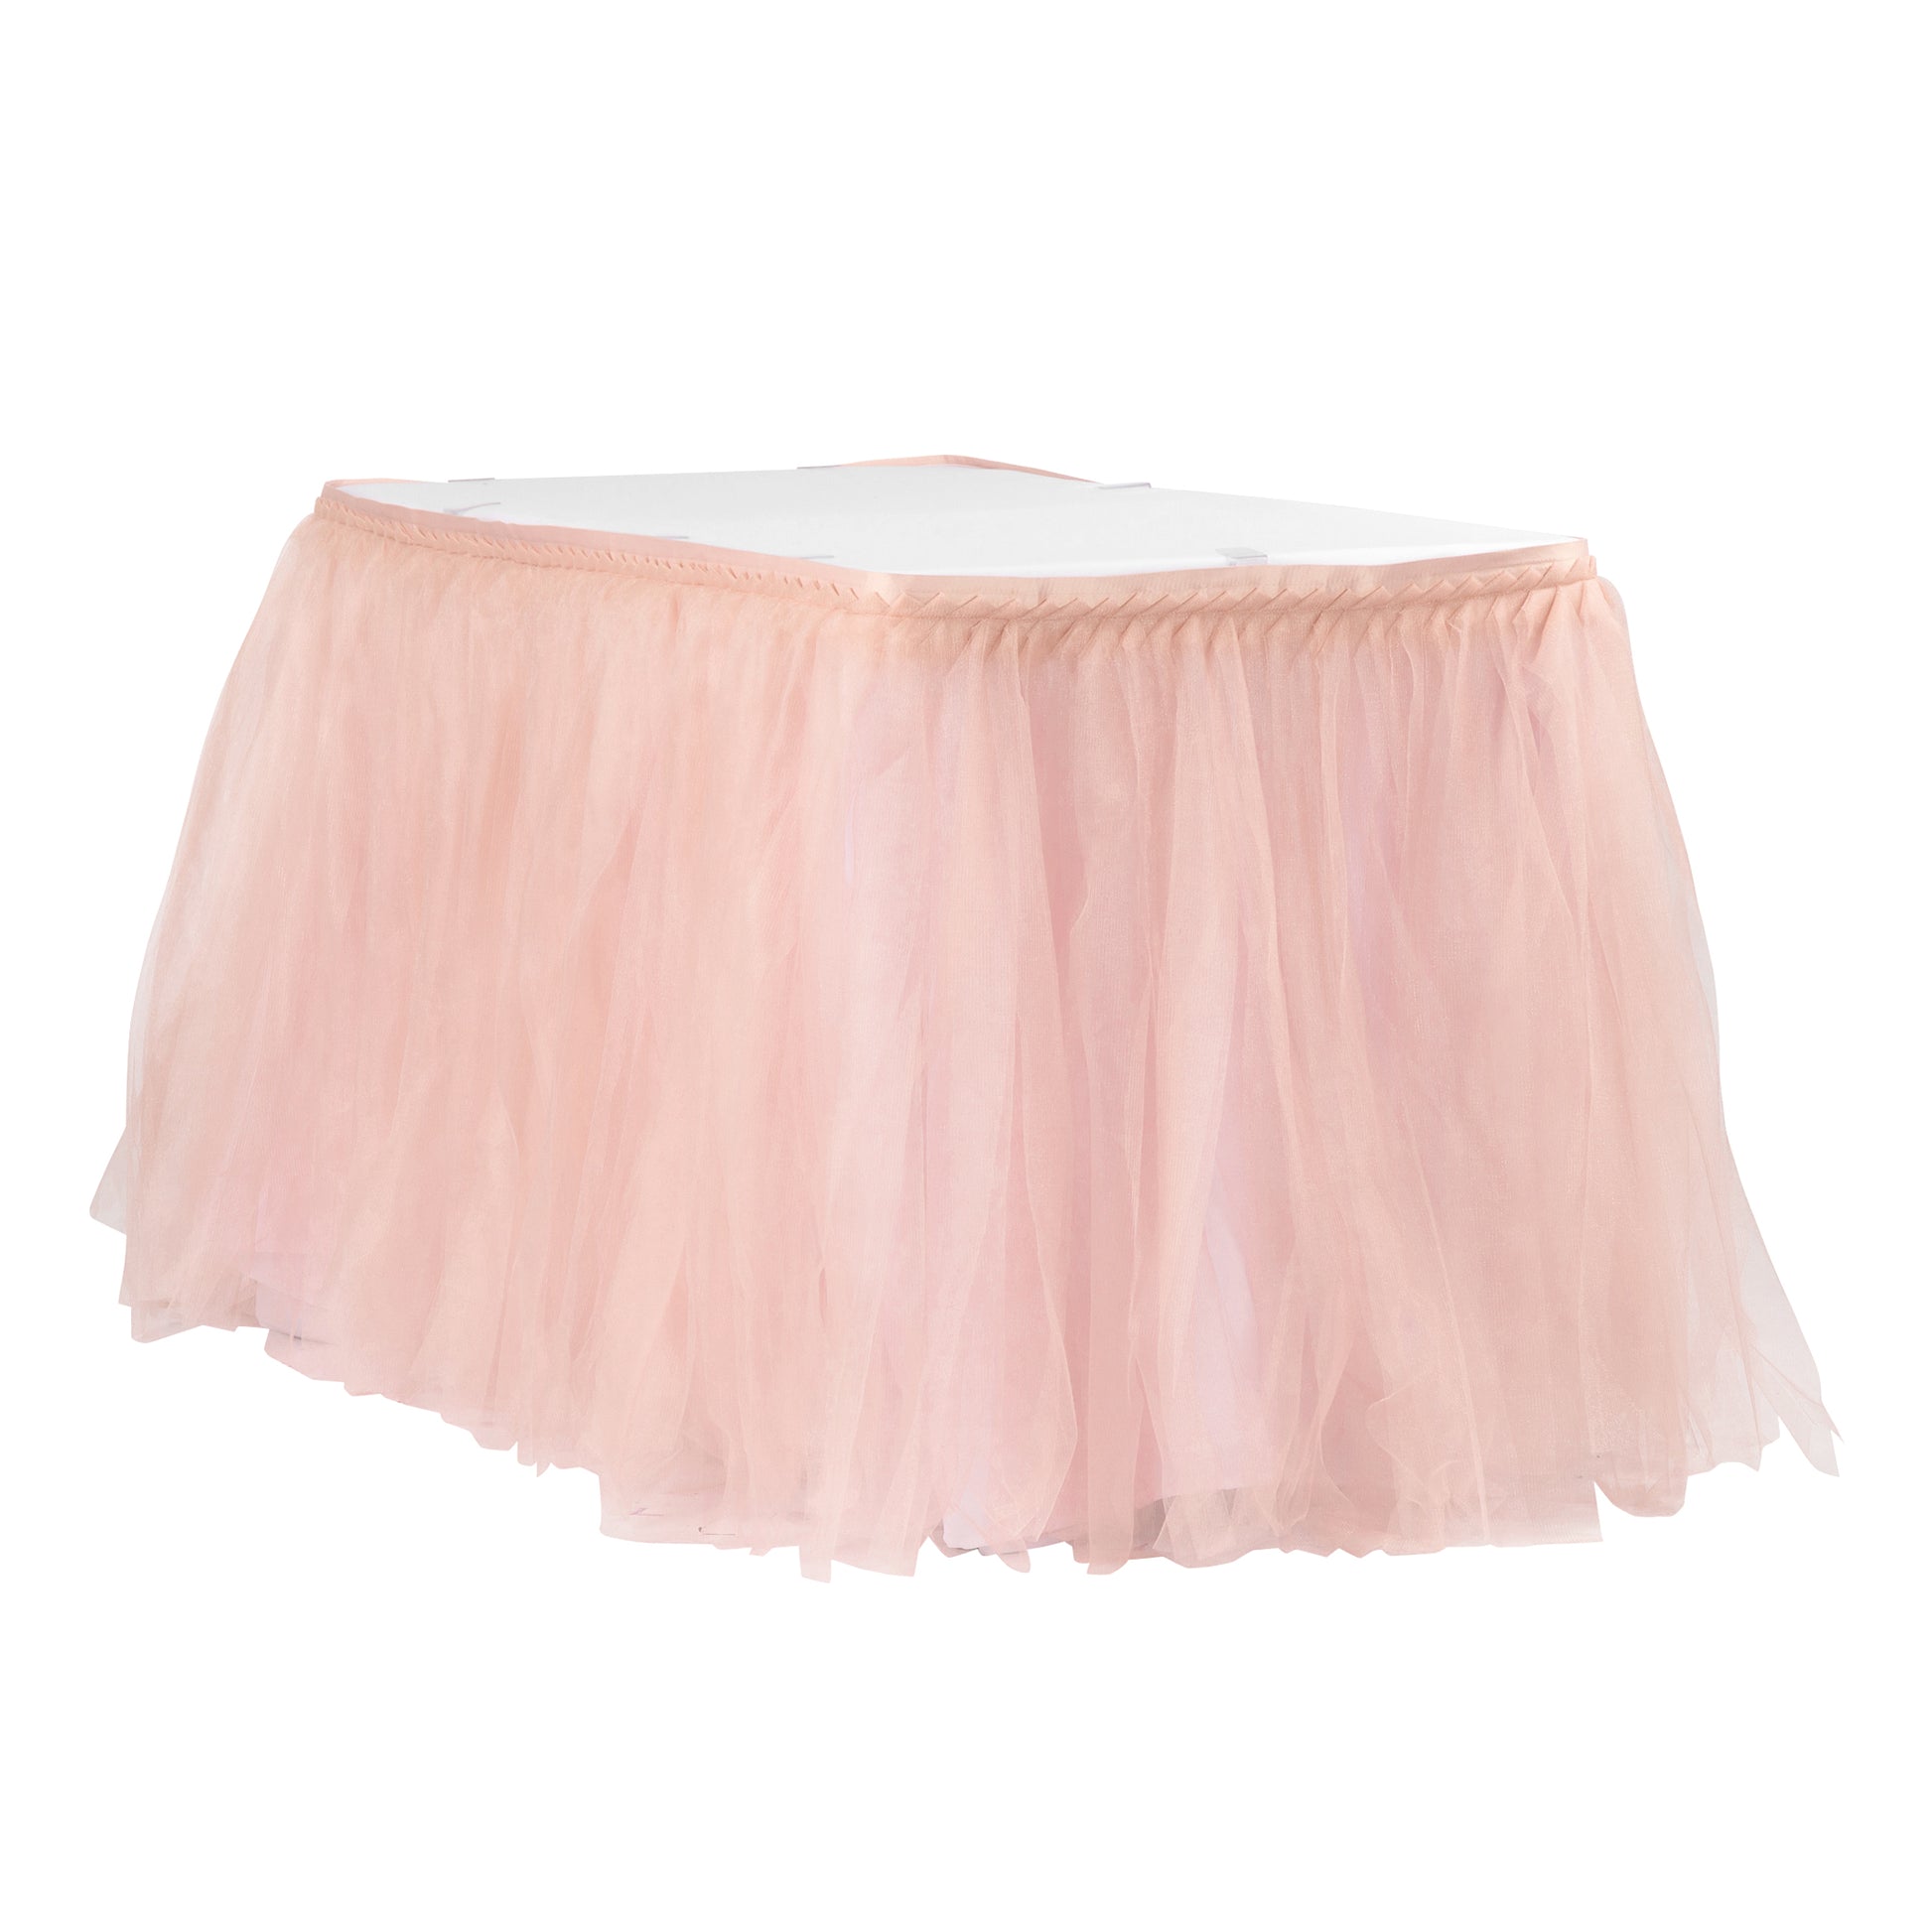 Tulle Tutu 17ft Table Skirt - Blush/Rose Gold - CV Linens